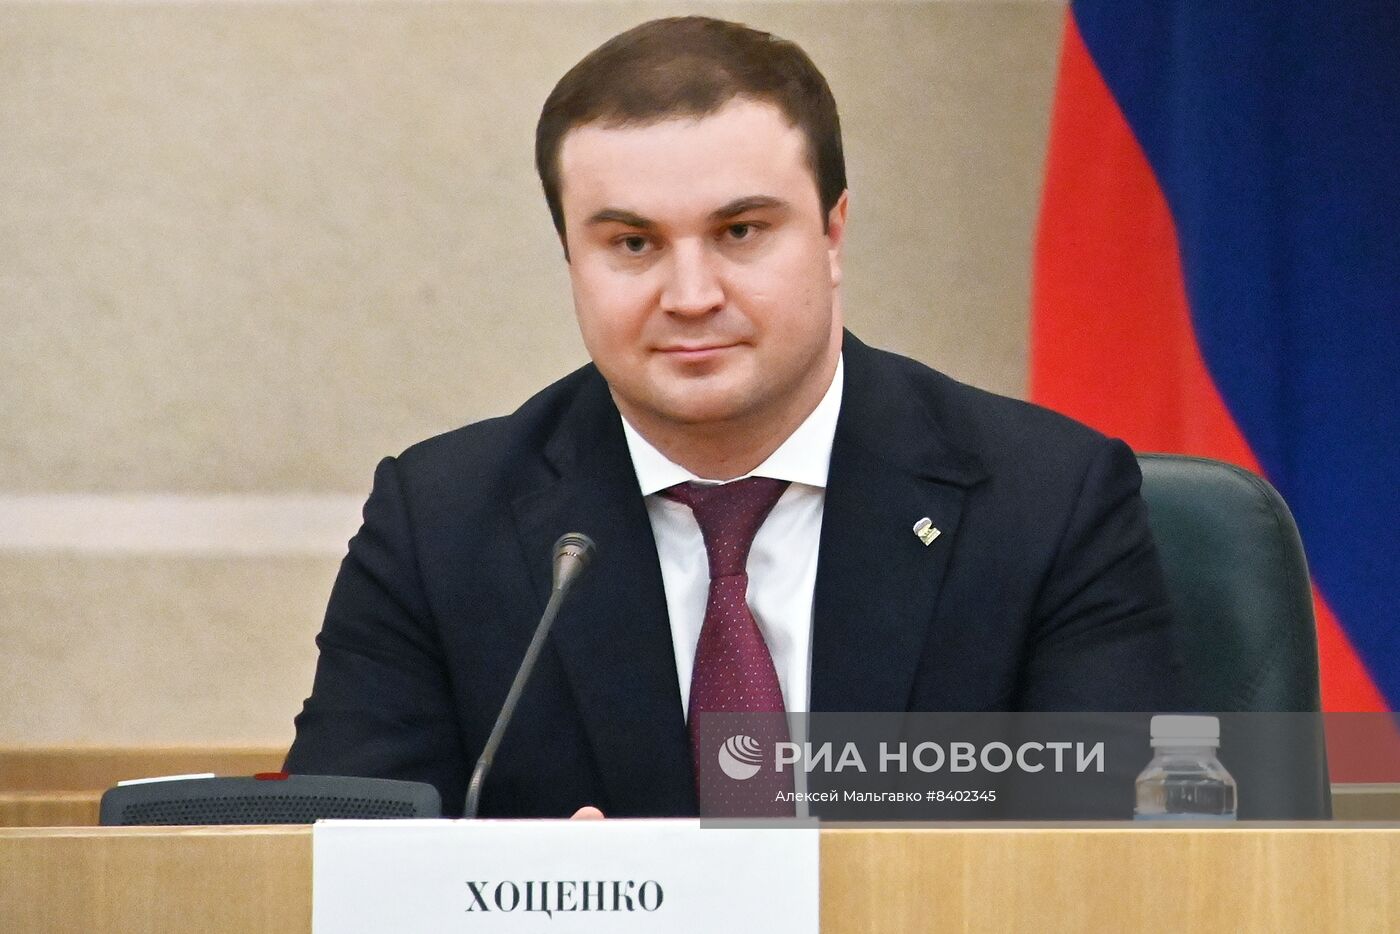 Представление нового ВРИО губернатора Омской области В. Хоценко